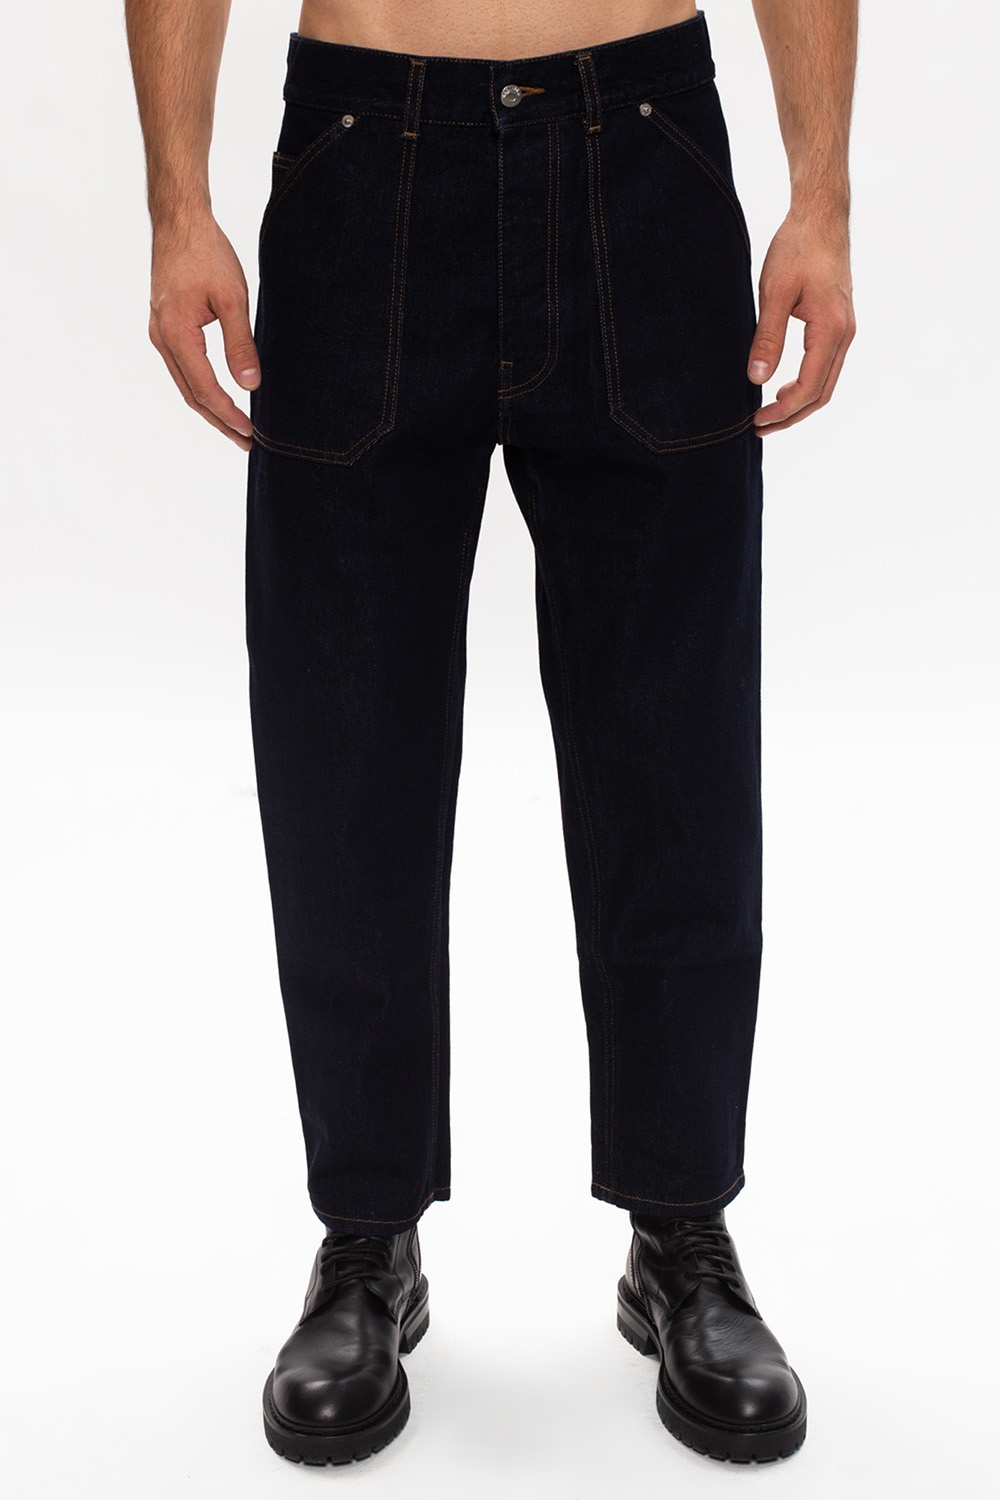 Nanushka Jeans with pockets